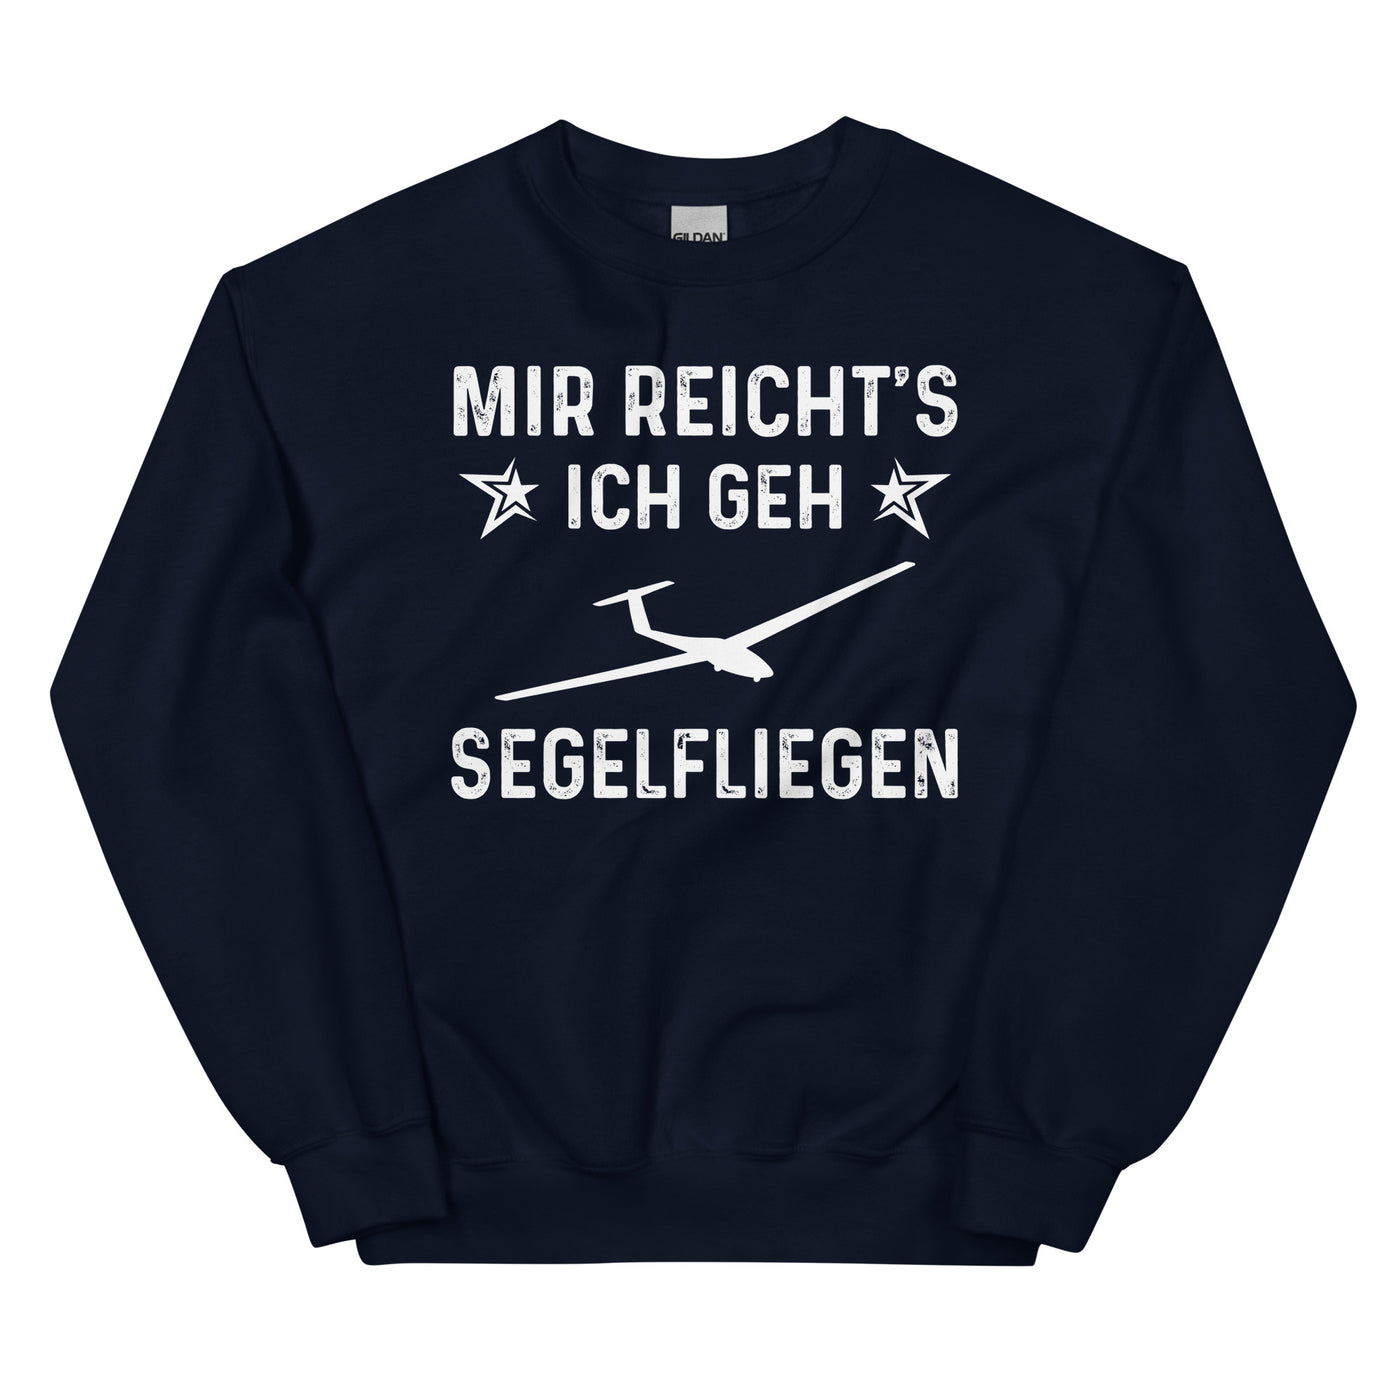 Mir Reicht's Ich Gen Segelfliegen - Sweatshirt (Unisex) berge xxx yyy zzz Navy